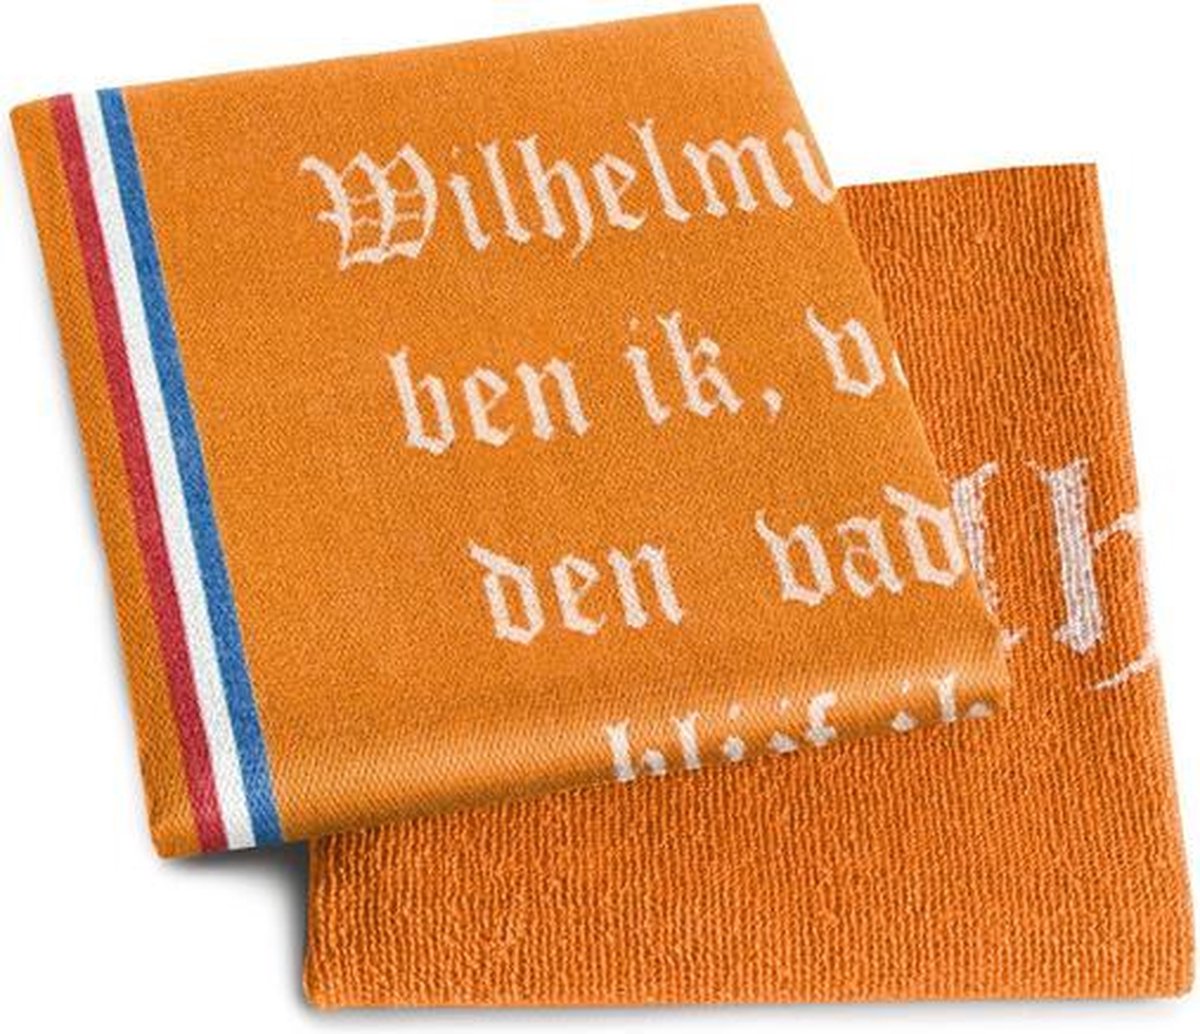 DDDDD Keukenset Wilhelmus (3-pack) - 60x65 cm - Oranje